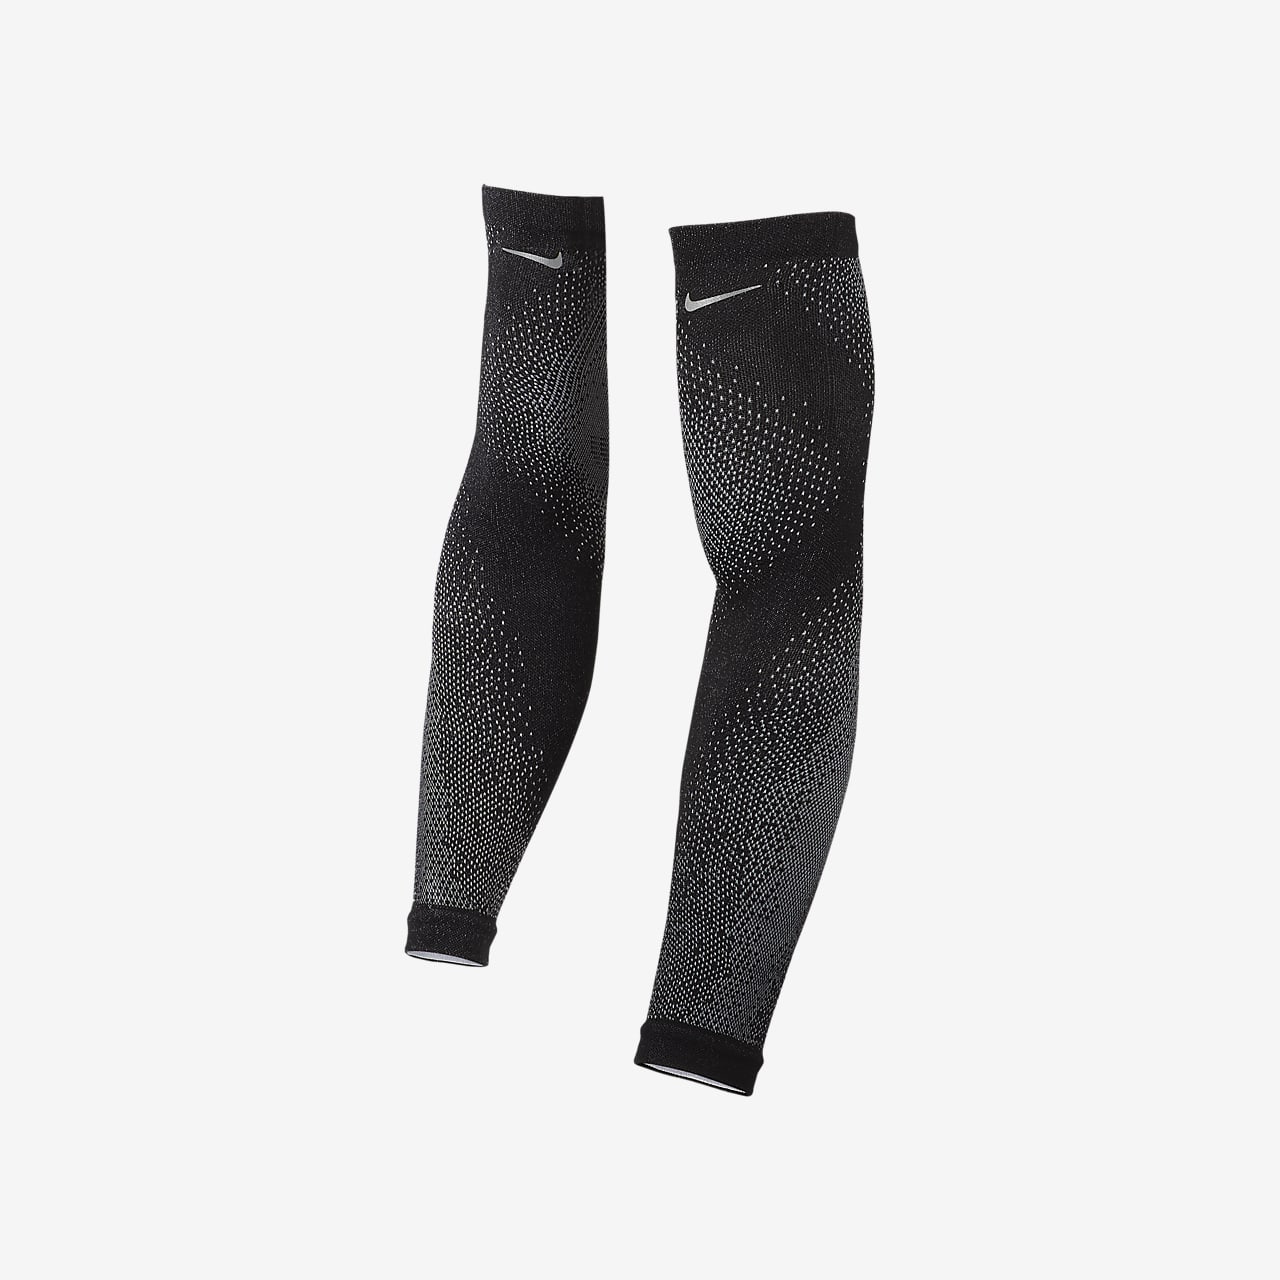 NIKE Equipment Nike Lightweight Sleeves 2.0 - Calf sleeves